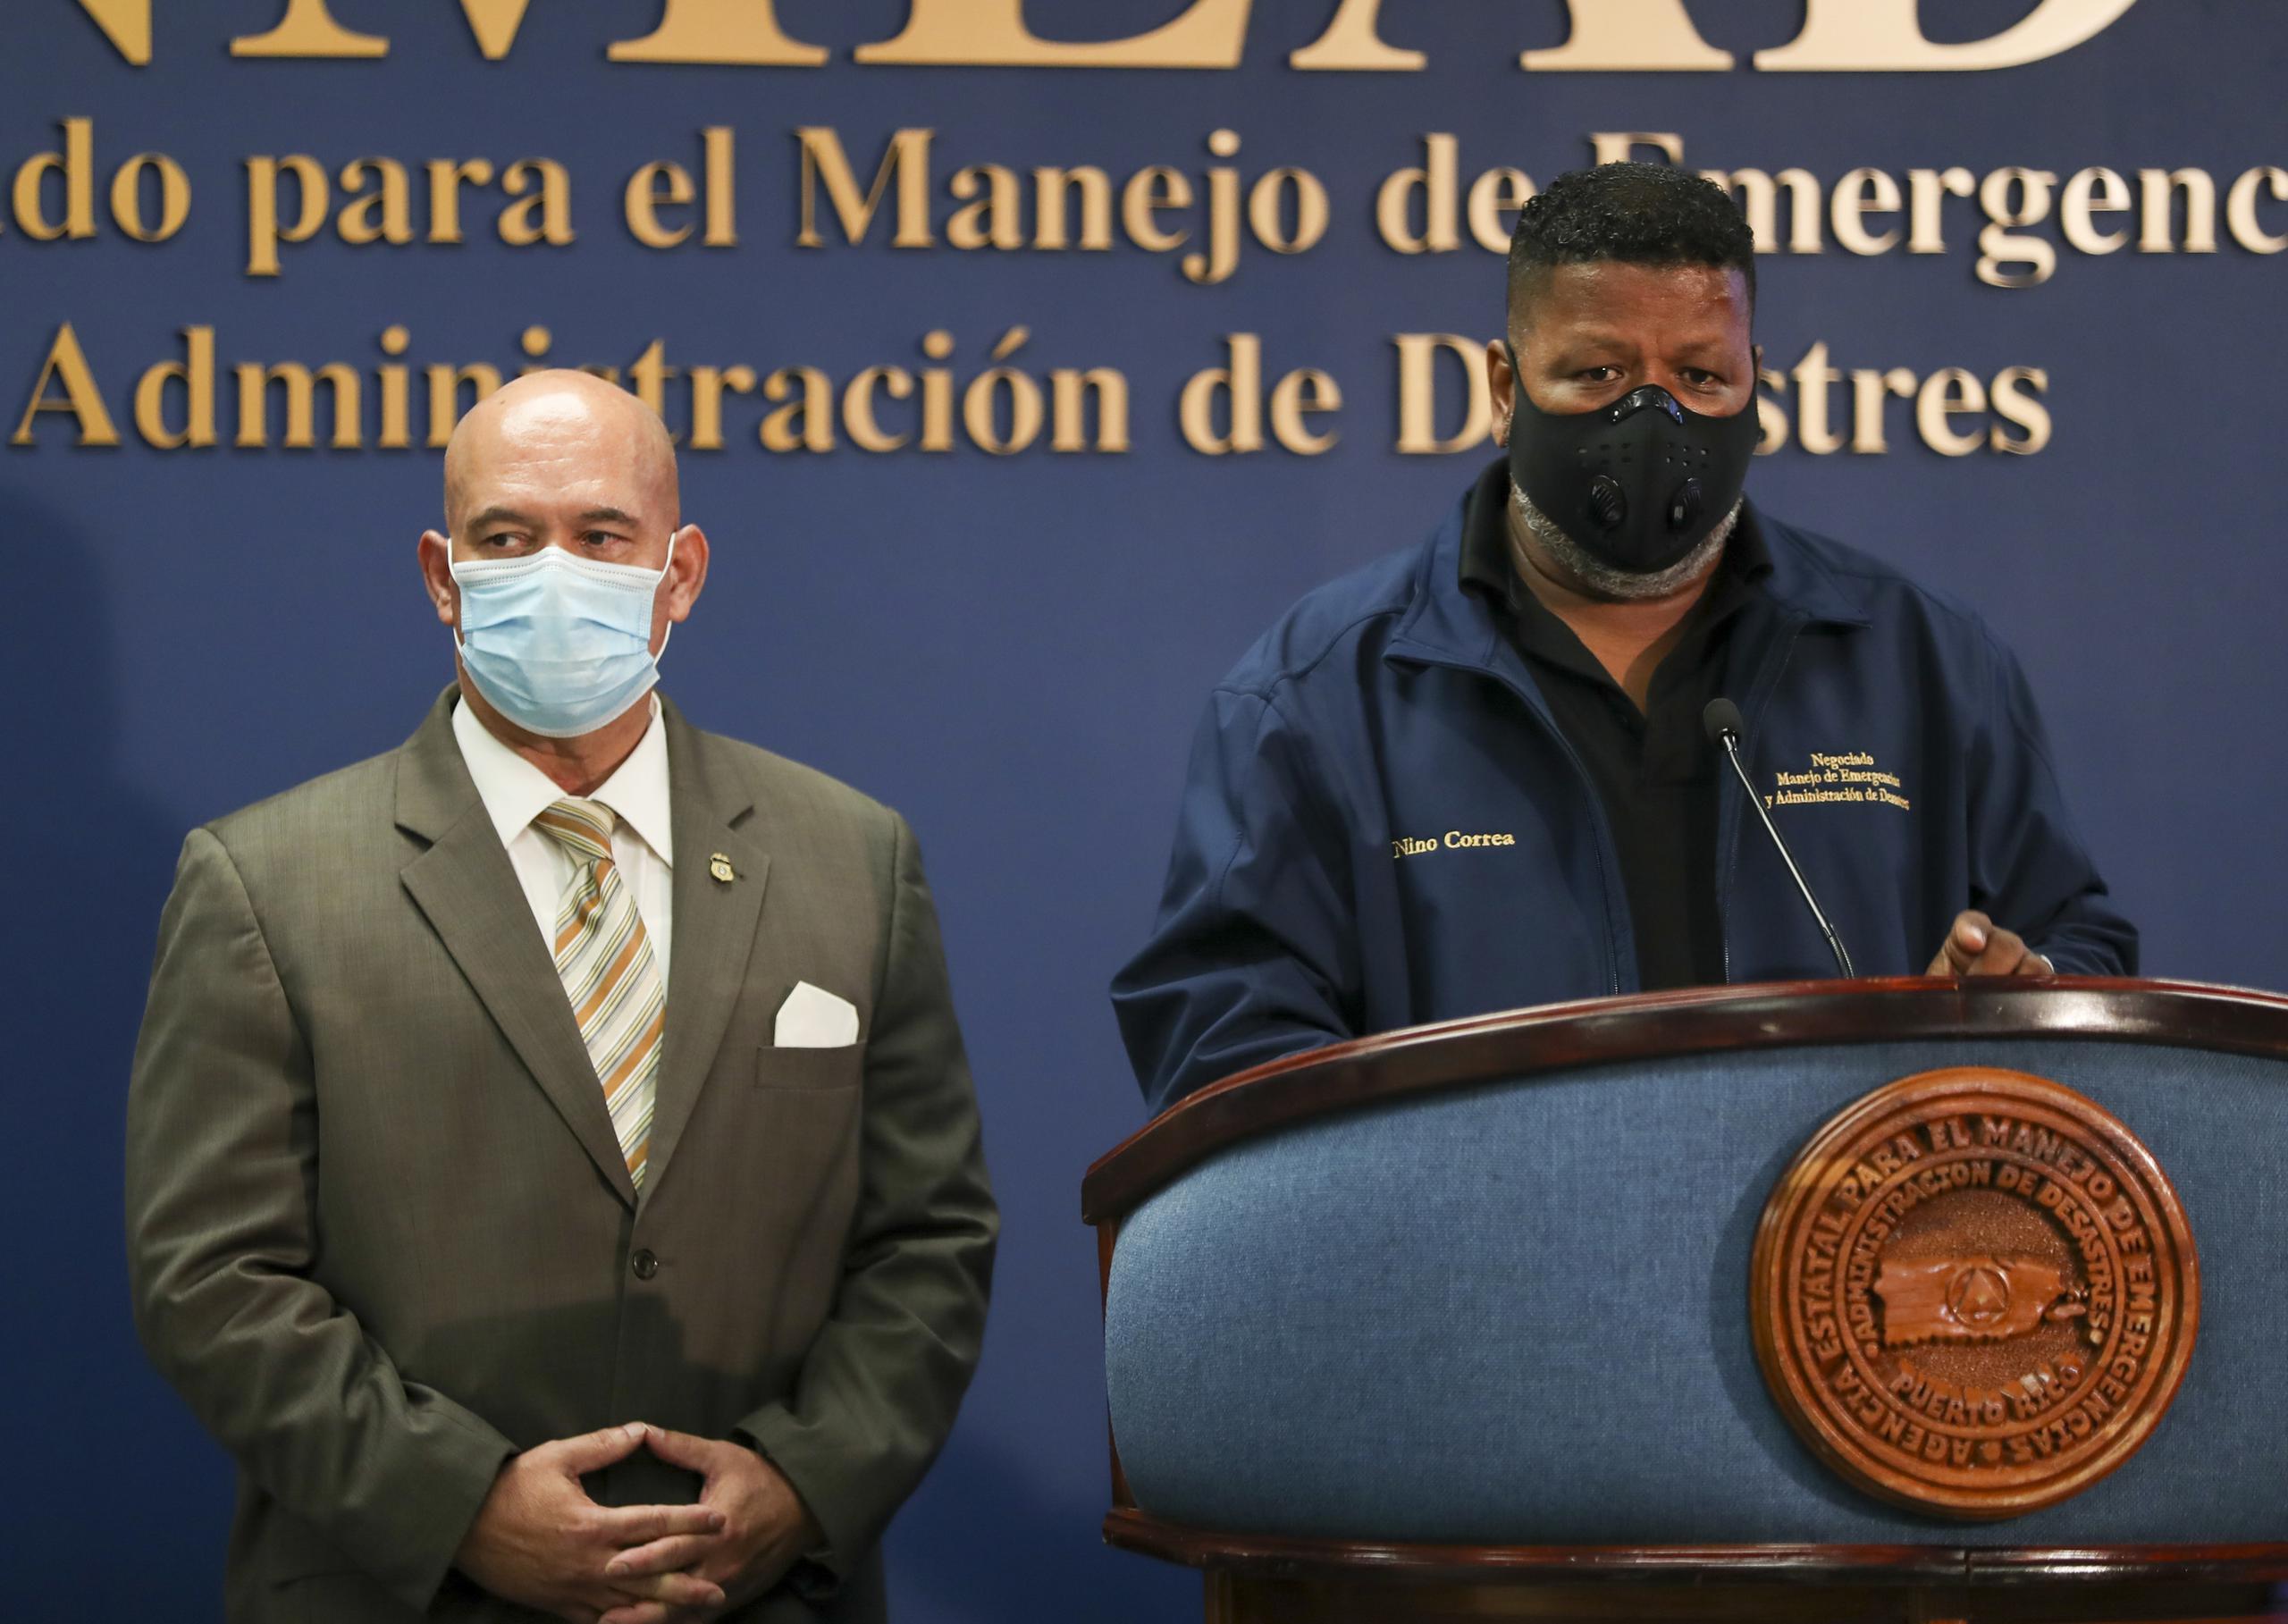 Pedro Janer y Nino Correa lamentaron la muerte del trabajador.